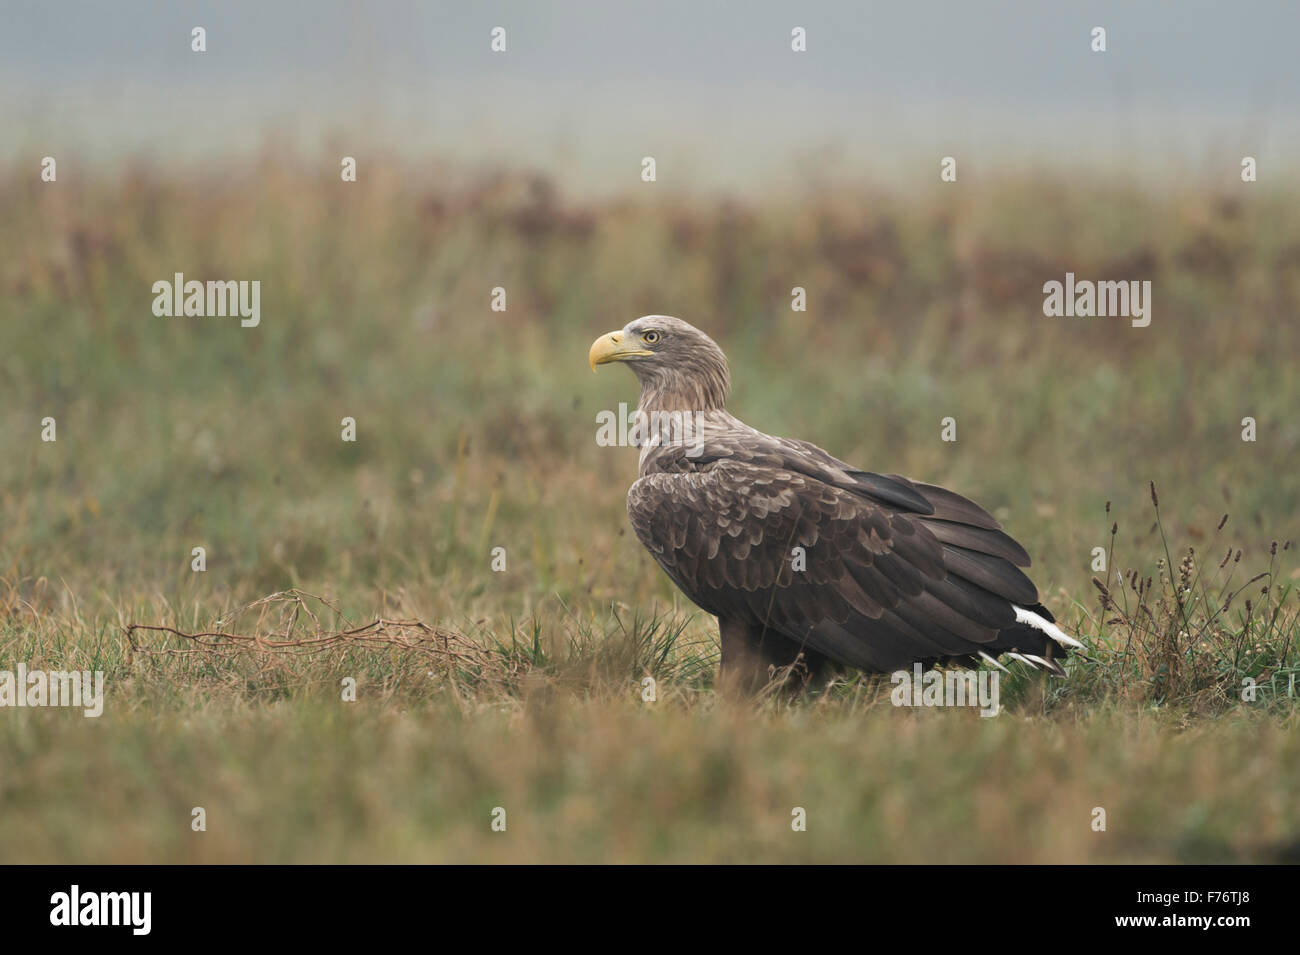 Atento blanco adulto-tailed Eagle / Mar / Águila Haliaeetus albicilla Seeadler ( ) se sienta en el suelo, Mirando cuidadosamente alrededor. Foto de stock